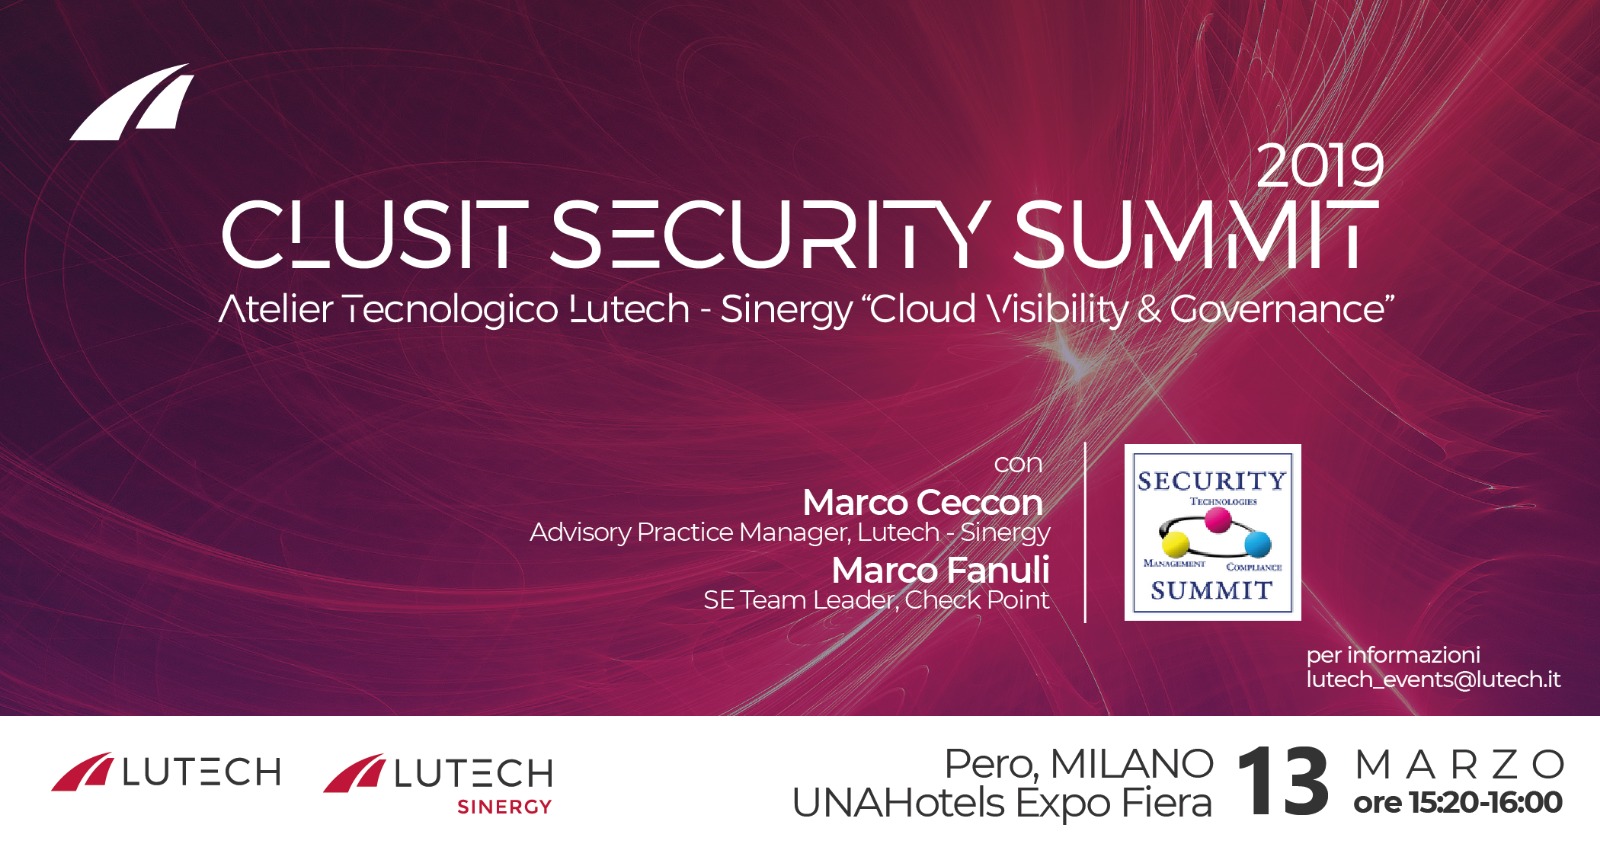 Security Summit organizzato da Clusit - Associazione Italiana per la Sicurezza Informatica e Astrea